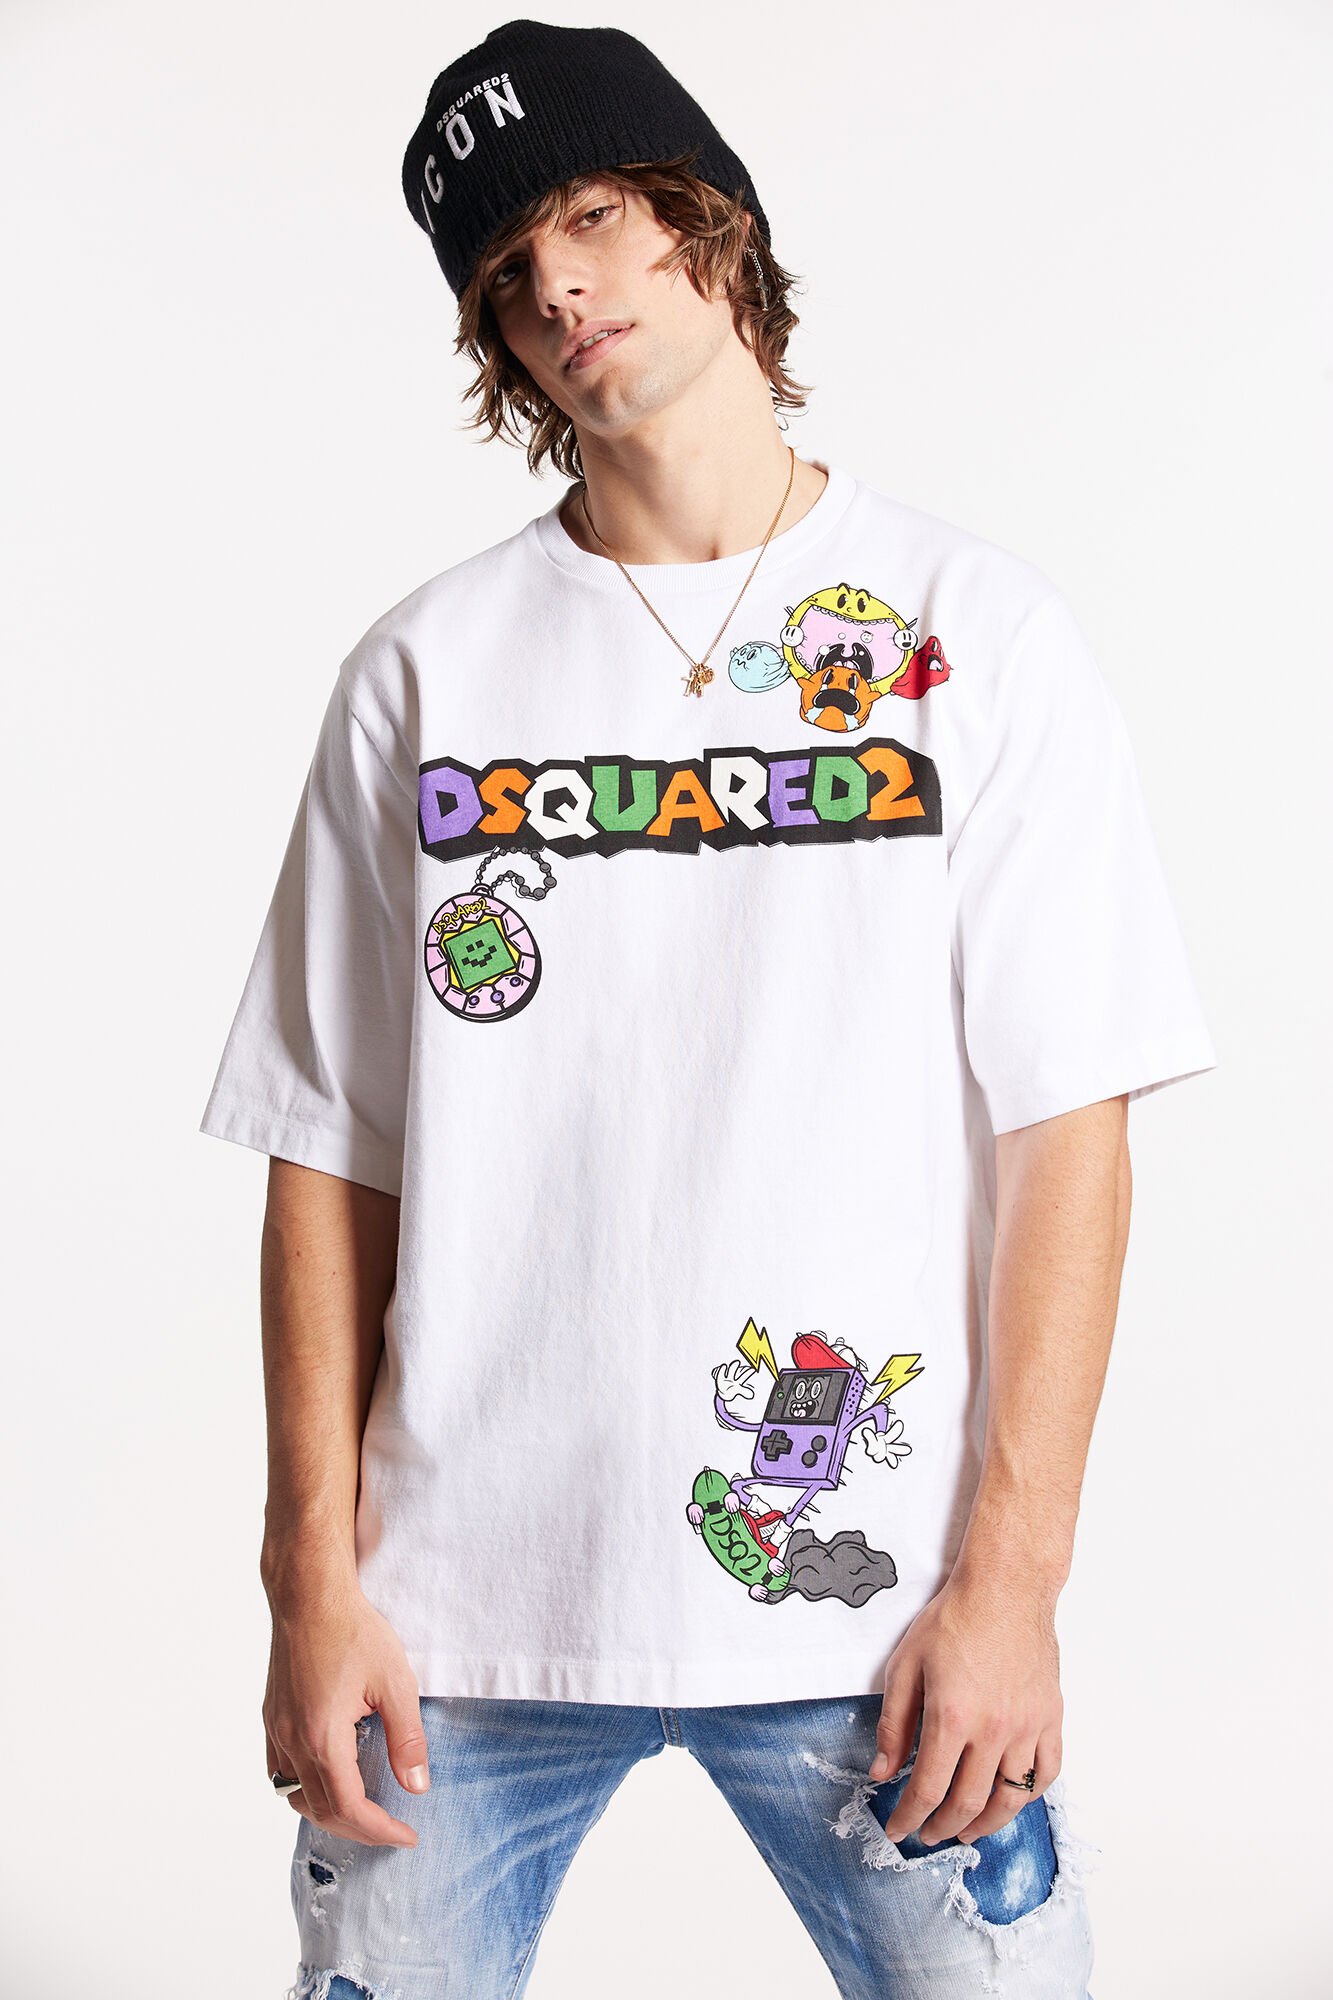 DSQUARED2 Tシャツ - Tシャツ